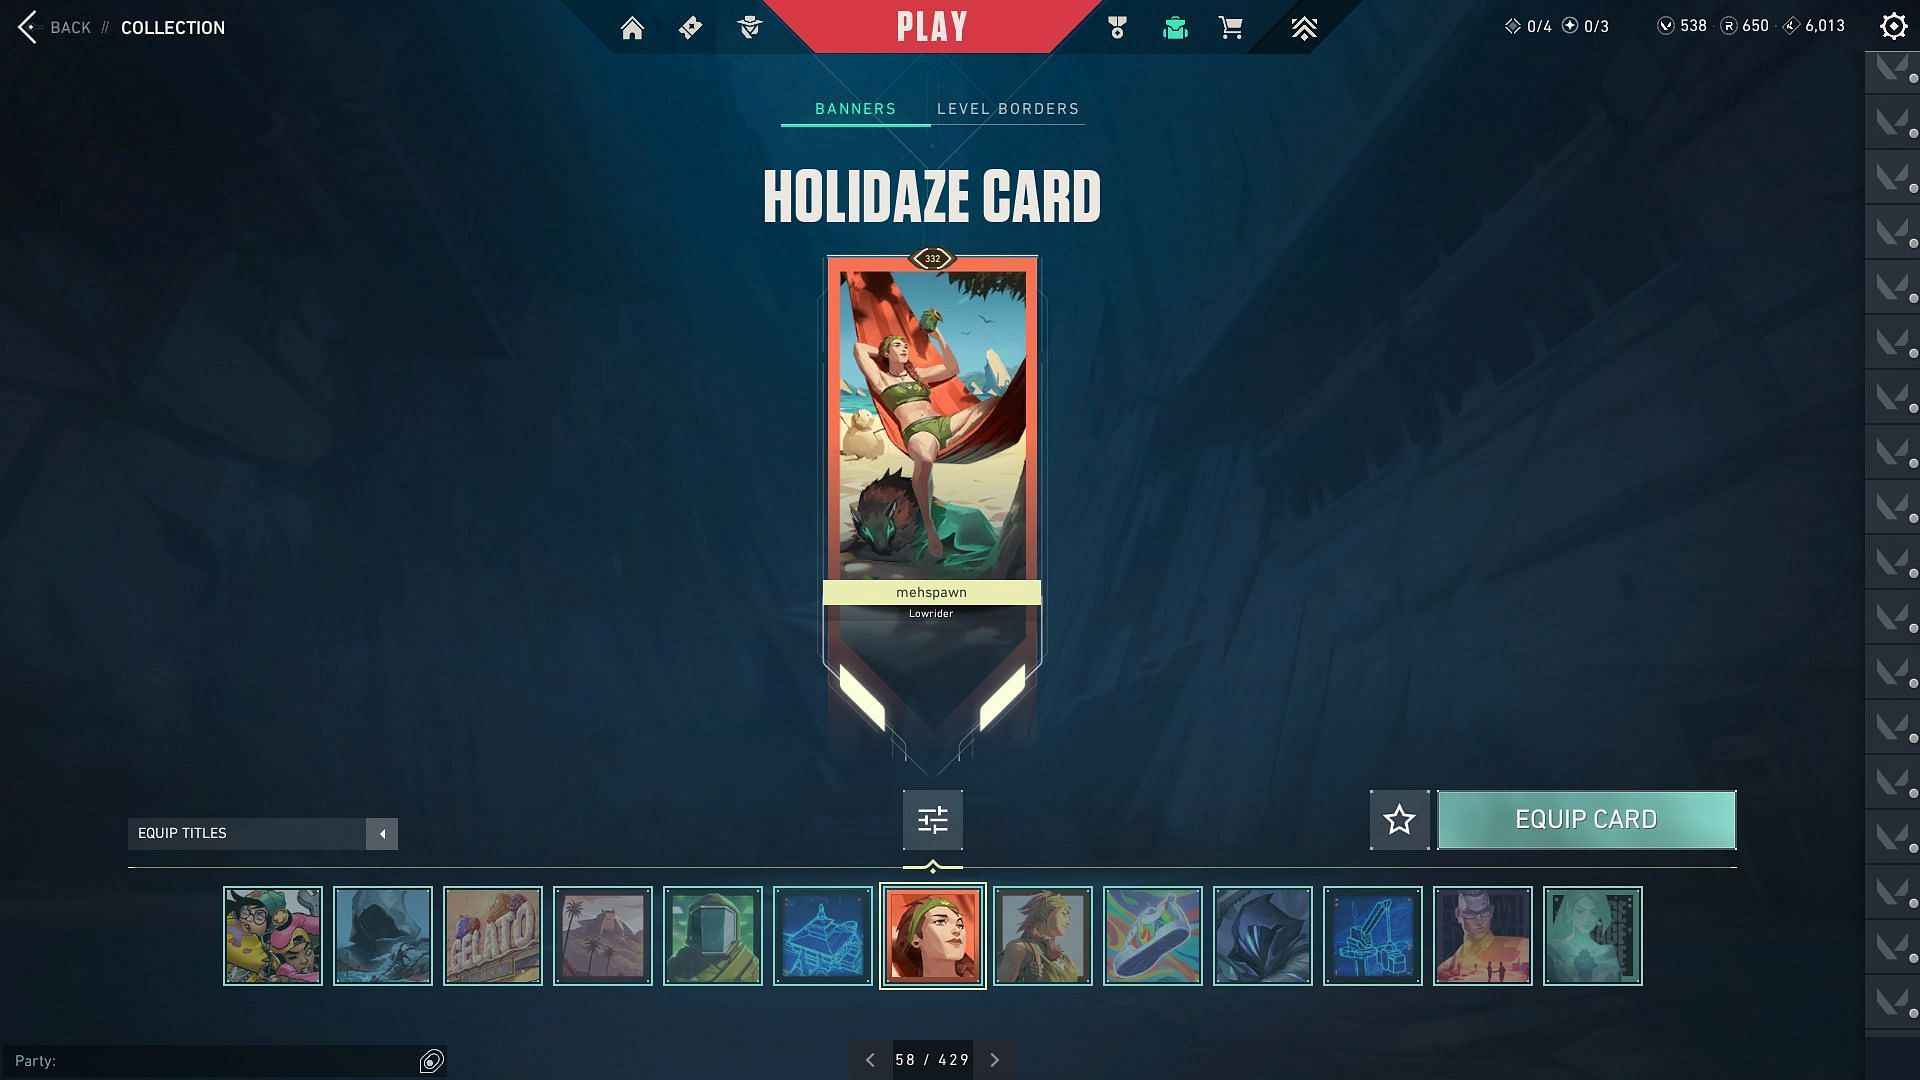 The Holidaze Player Card (Image via Riot Games)